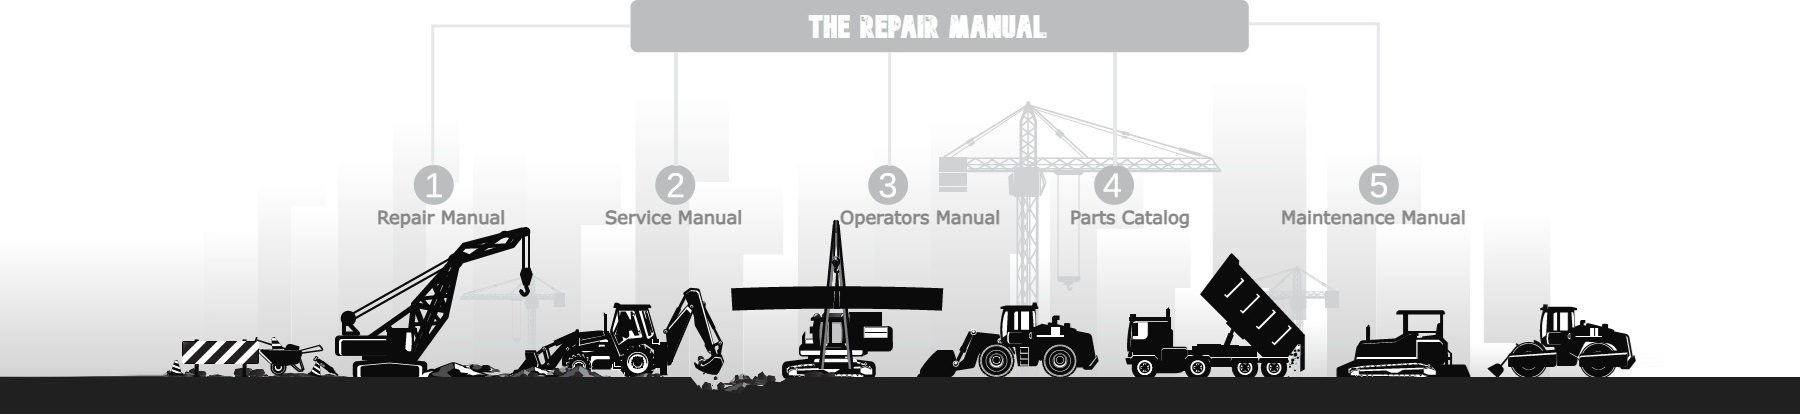 The Repair Manual